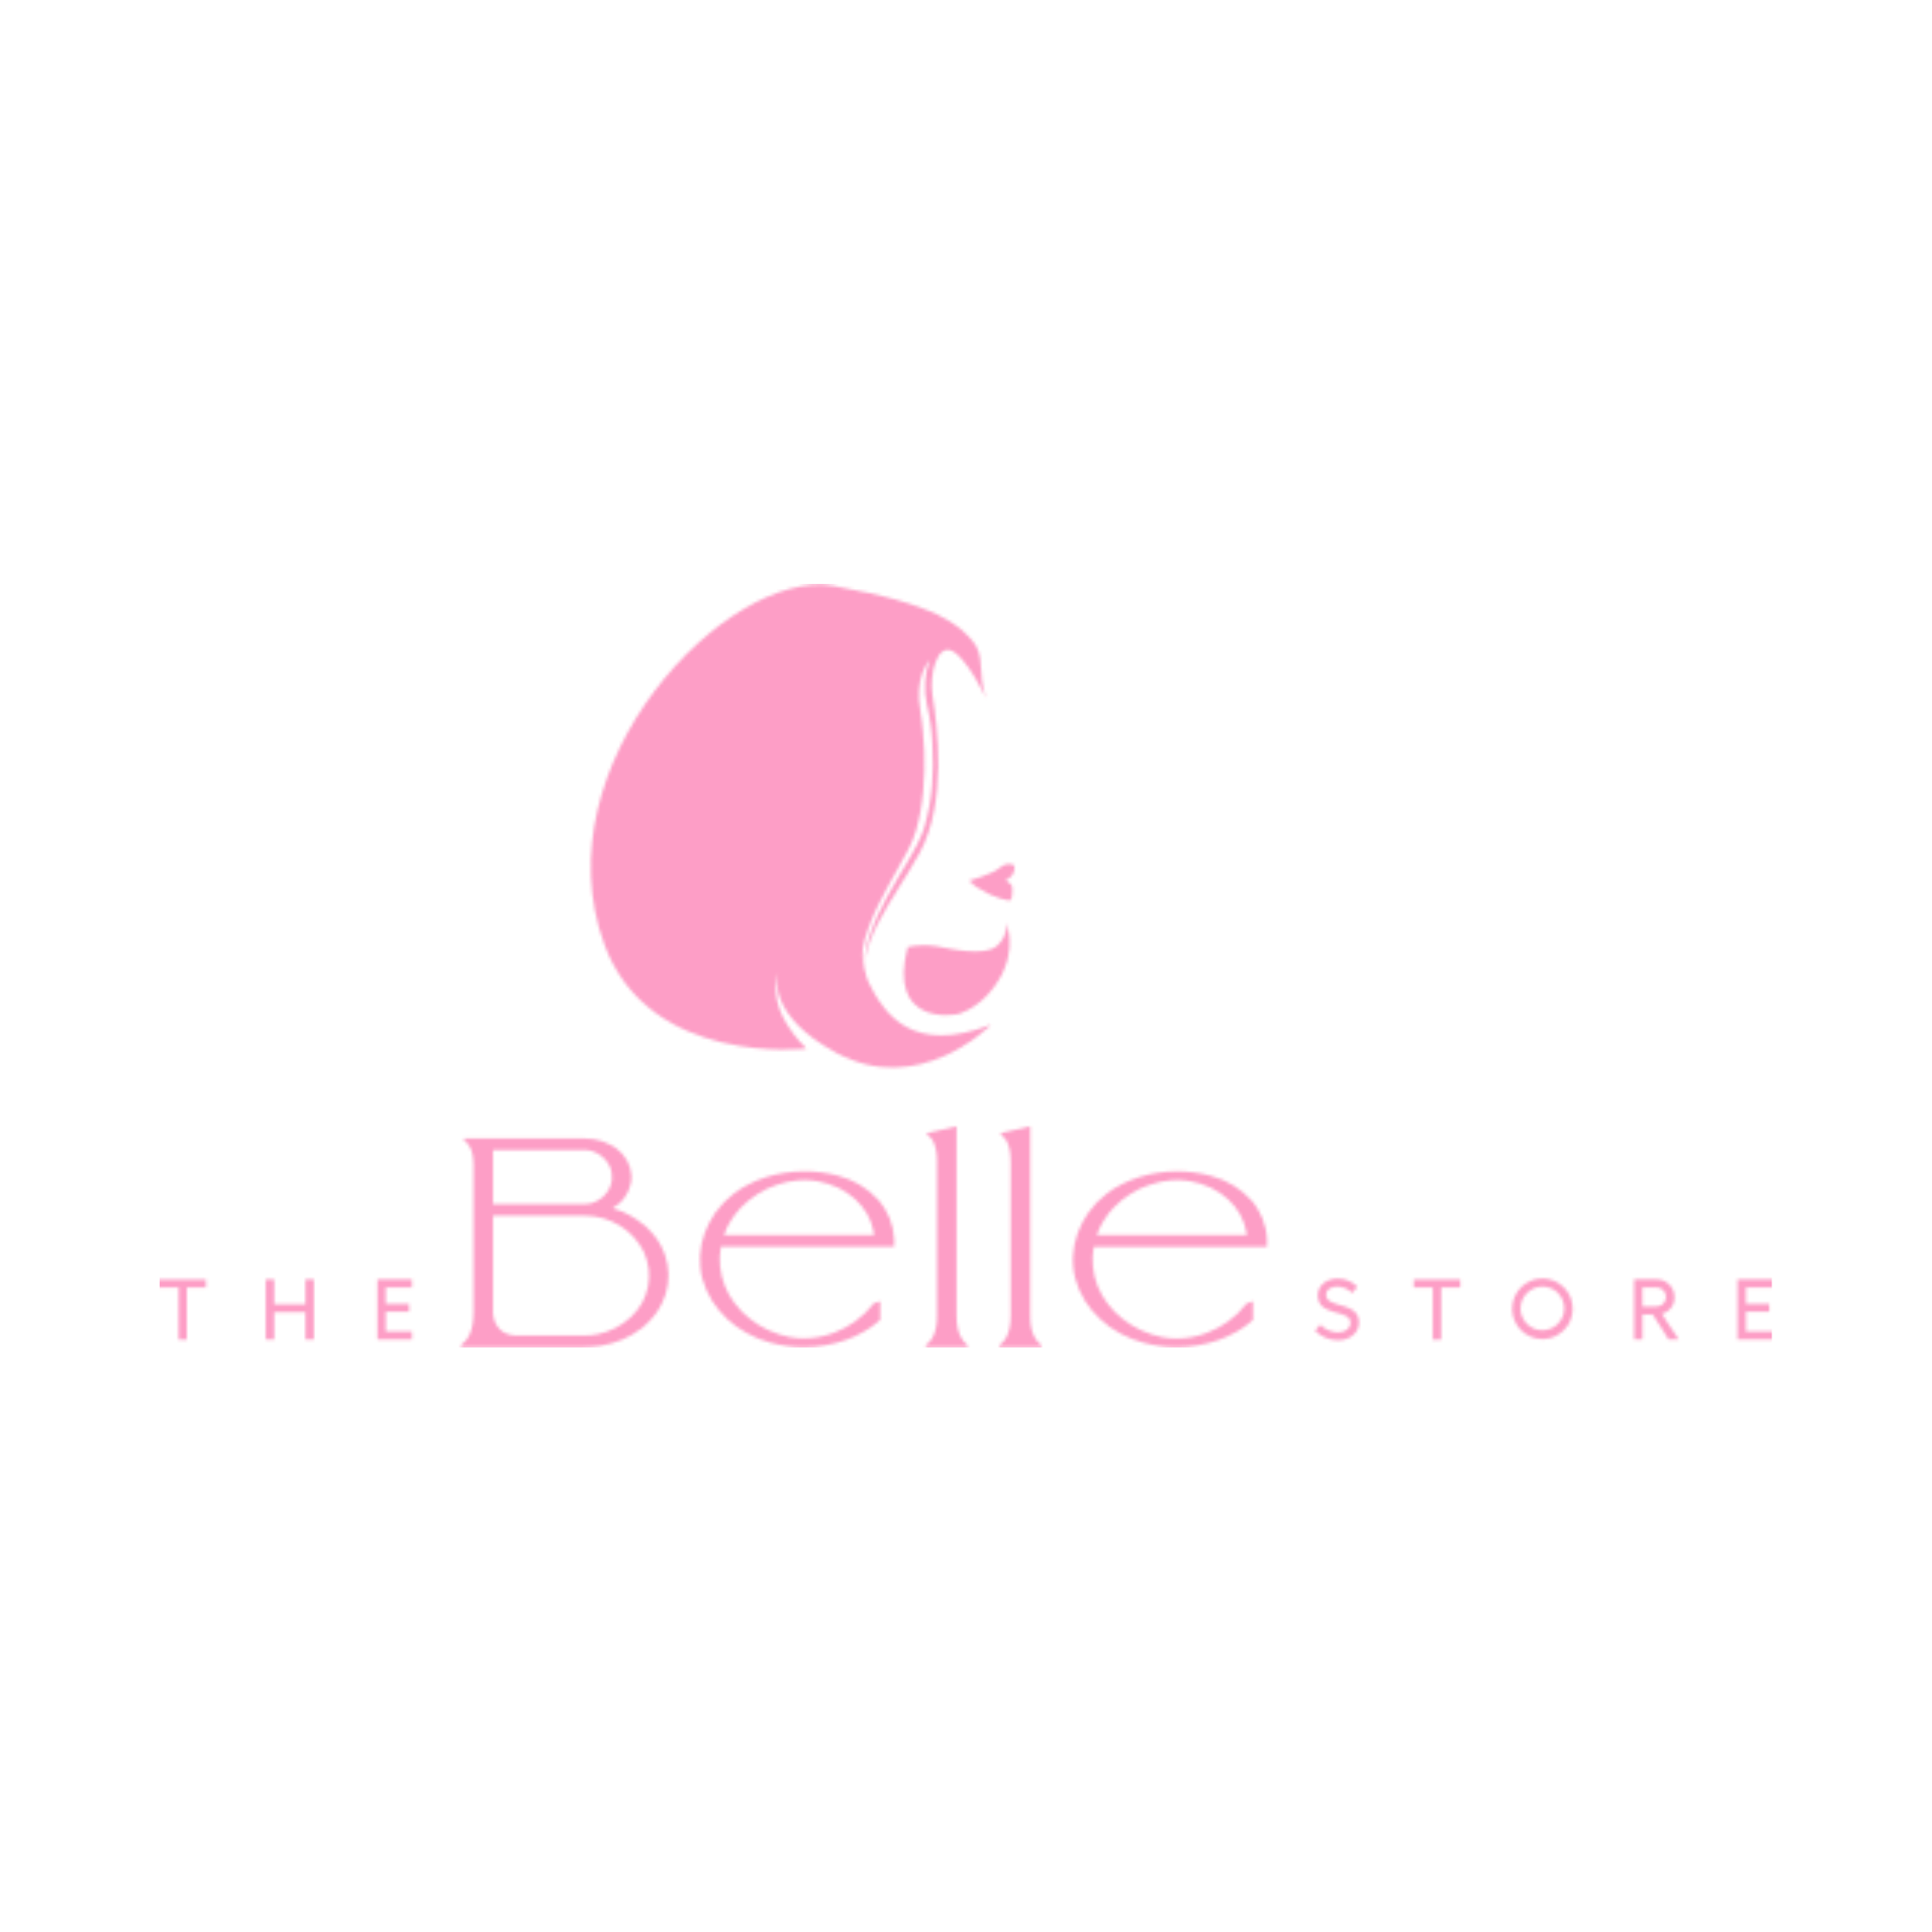 Thebellestore